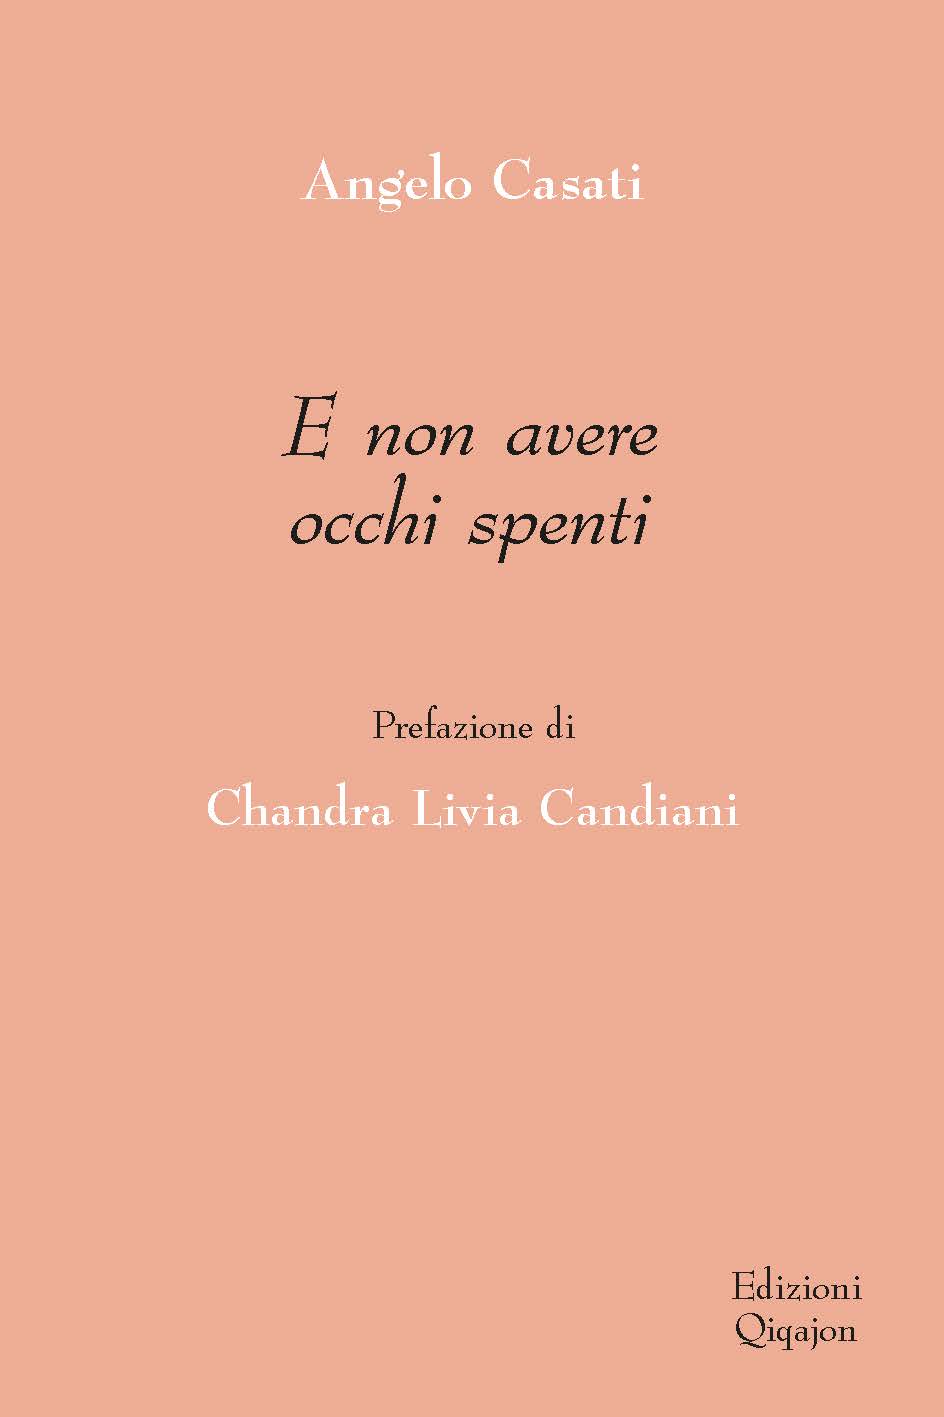 E non avere occhi spenti - Prefazione di Chandra Livia Candiani libro,  Angelo Casati, Qiqajon Edizioni, ottobre 2021, Spiritualità 